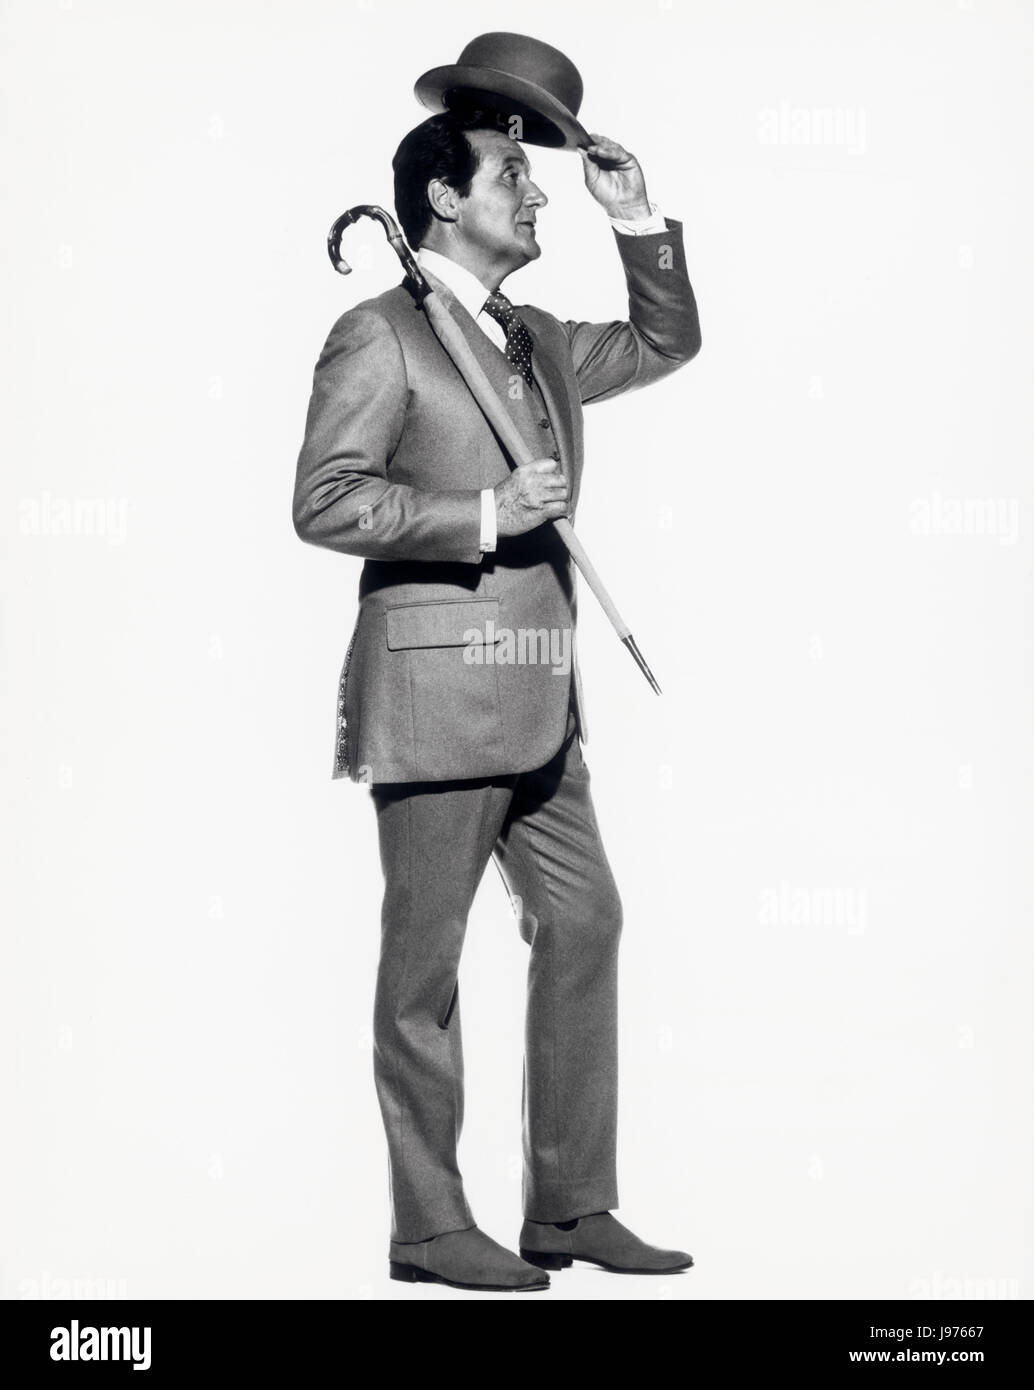 PATRICK MACNEE (* 6. Februar 1922 in London, Großbritannien) ist ein englischer Schauspieler. Patrick MacNee, english actor. Birthday: 6. febr. 2007 - ' 85 '. image: Patrick MacNee as John Steed in ' The Avengers ' (Mit Schirm, Charme und Melone), British series 1961-1969. Stock Photo